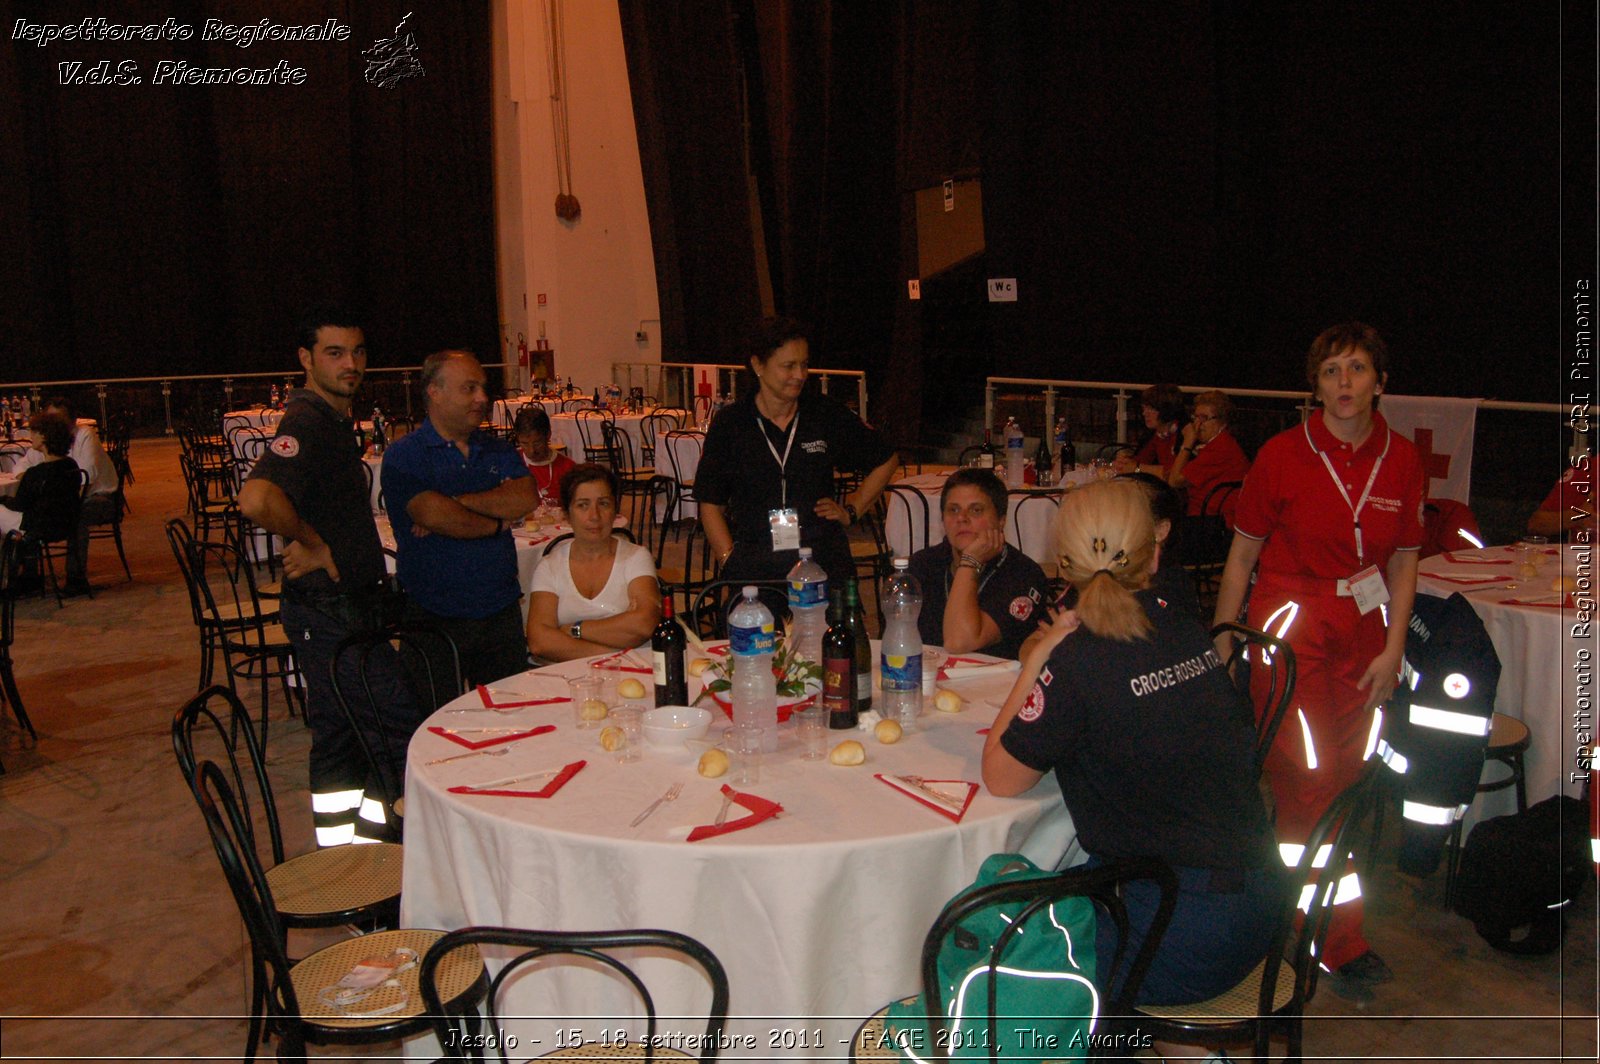 Jesolo - 15-18 settembre 2011 - FACE 2011, The Awards -  Croce Rossa Italiana - Ispettorato Regionale Volontari del Soccorso Piemonte